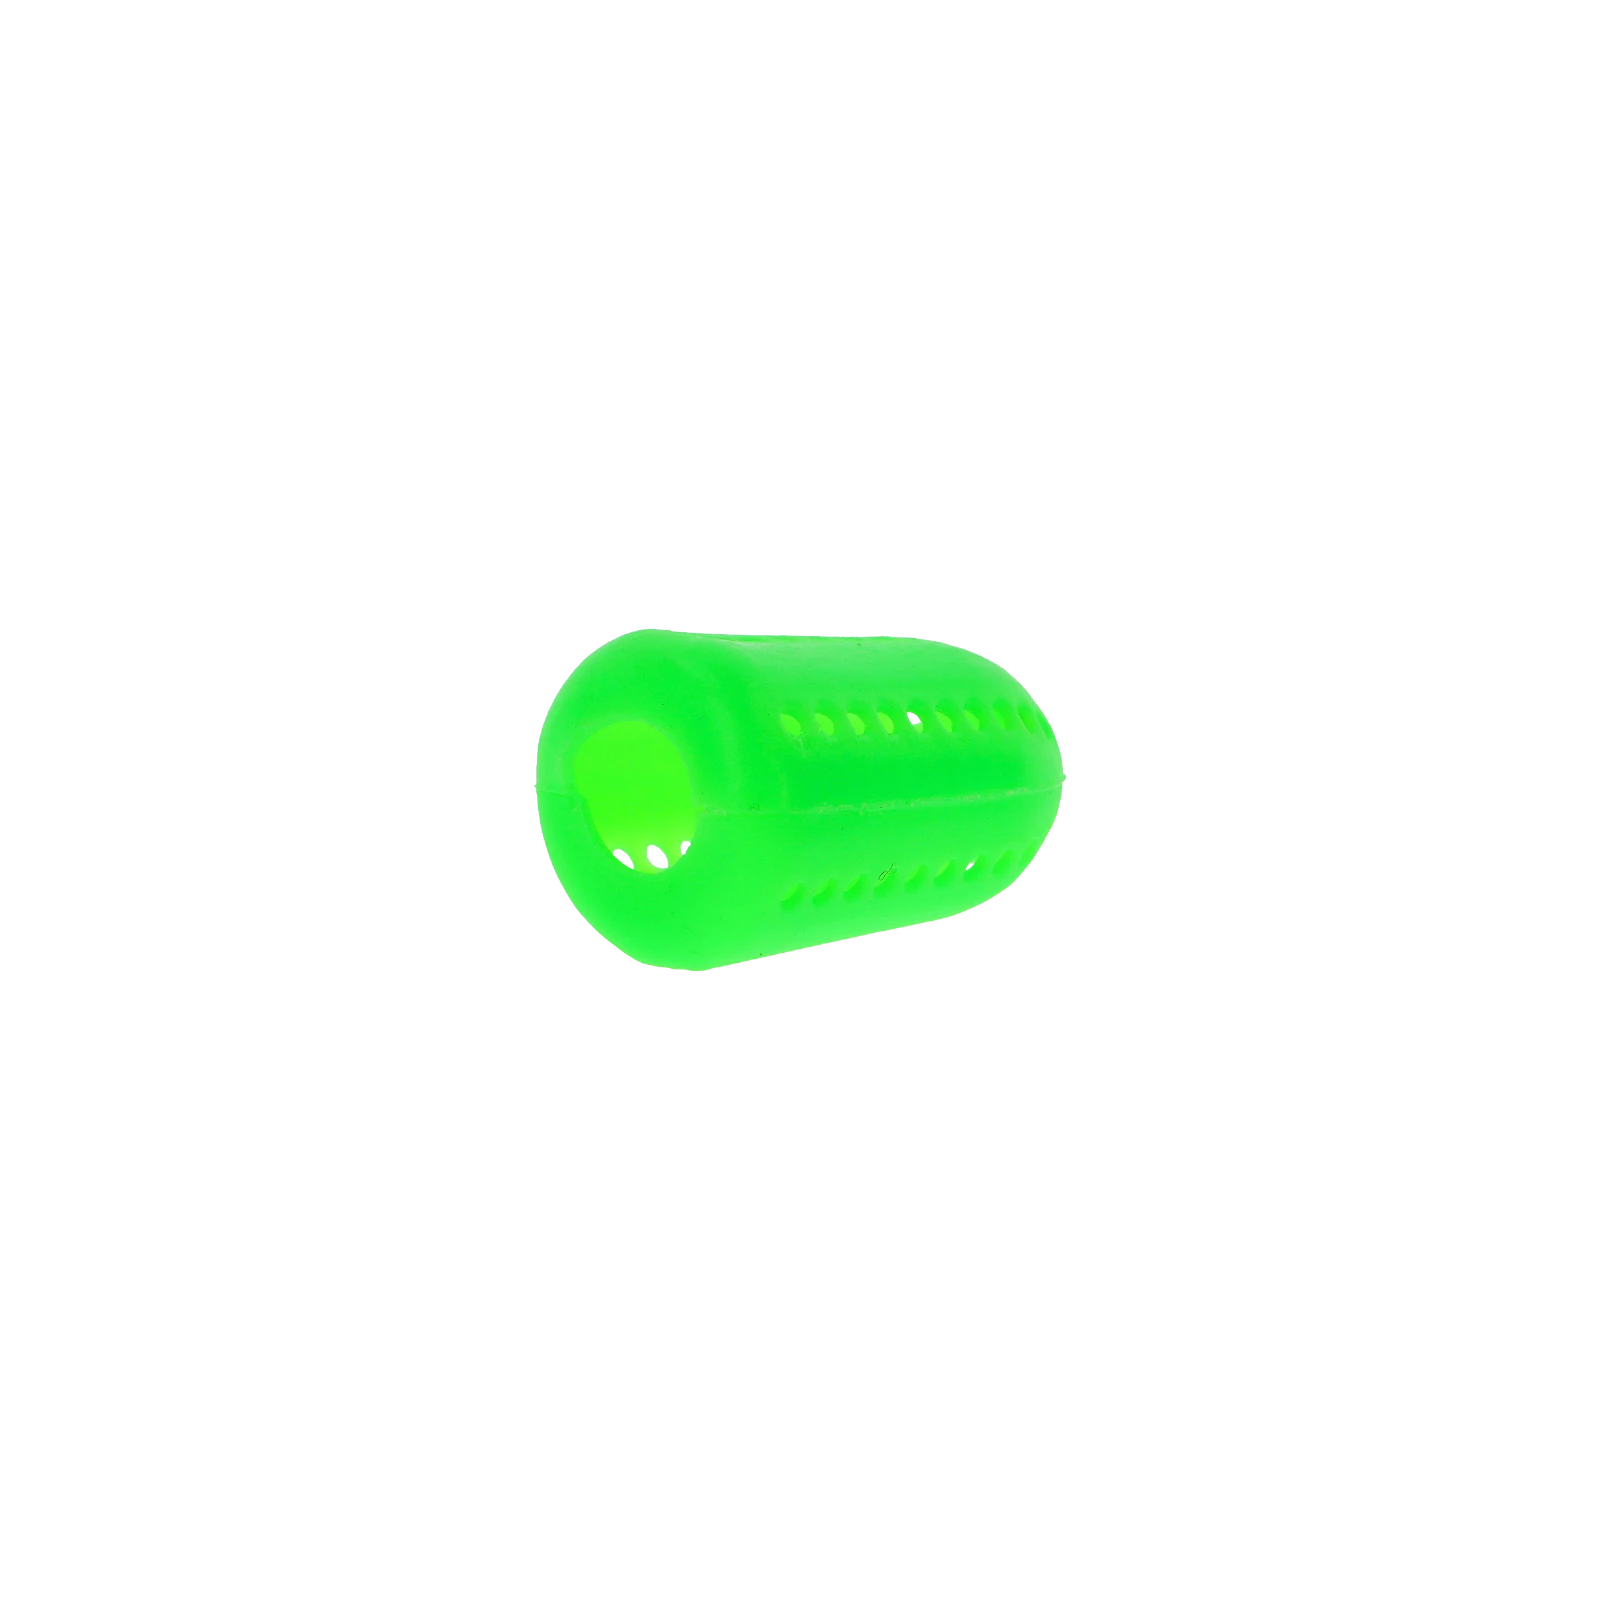 AO - Silikondiffusor - Glow - Green